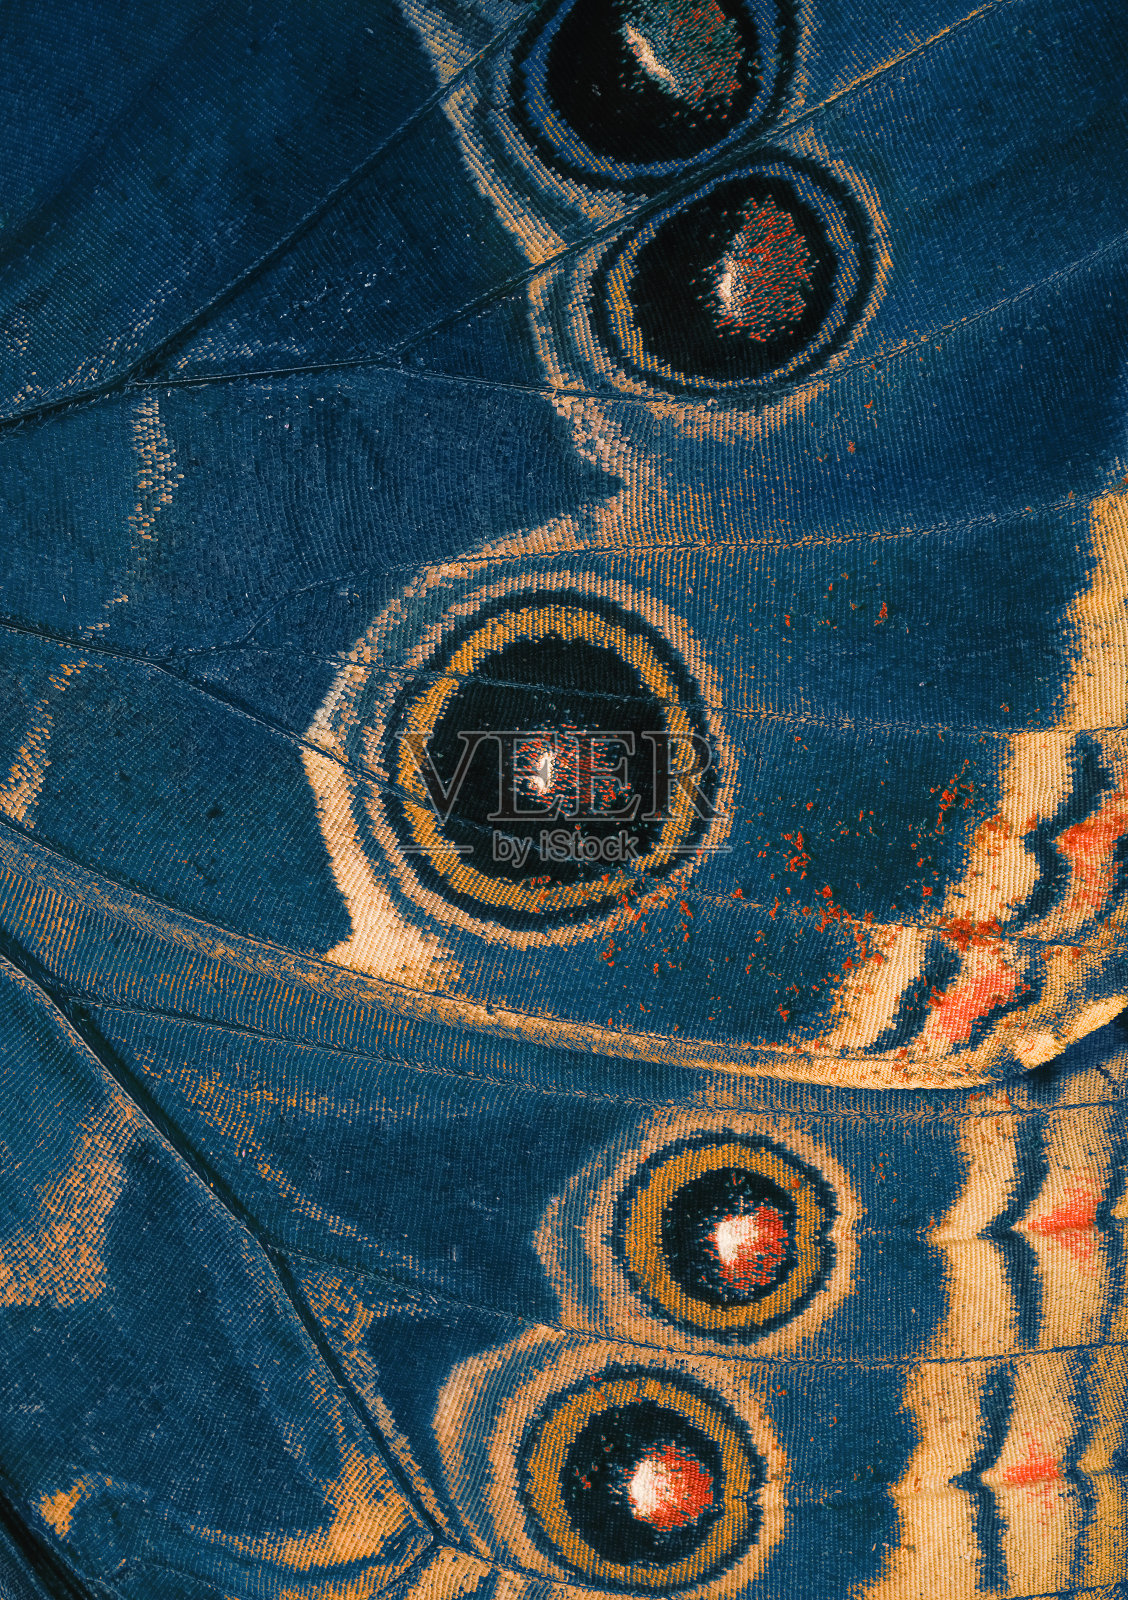 蝴蝶的翅膀底部是蓝色的照片摄影图片